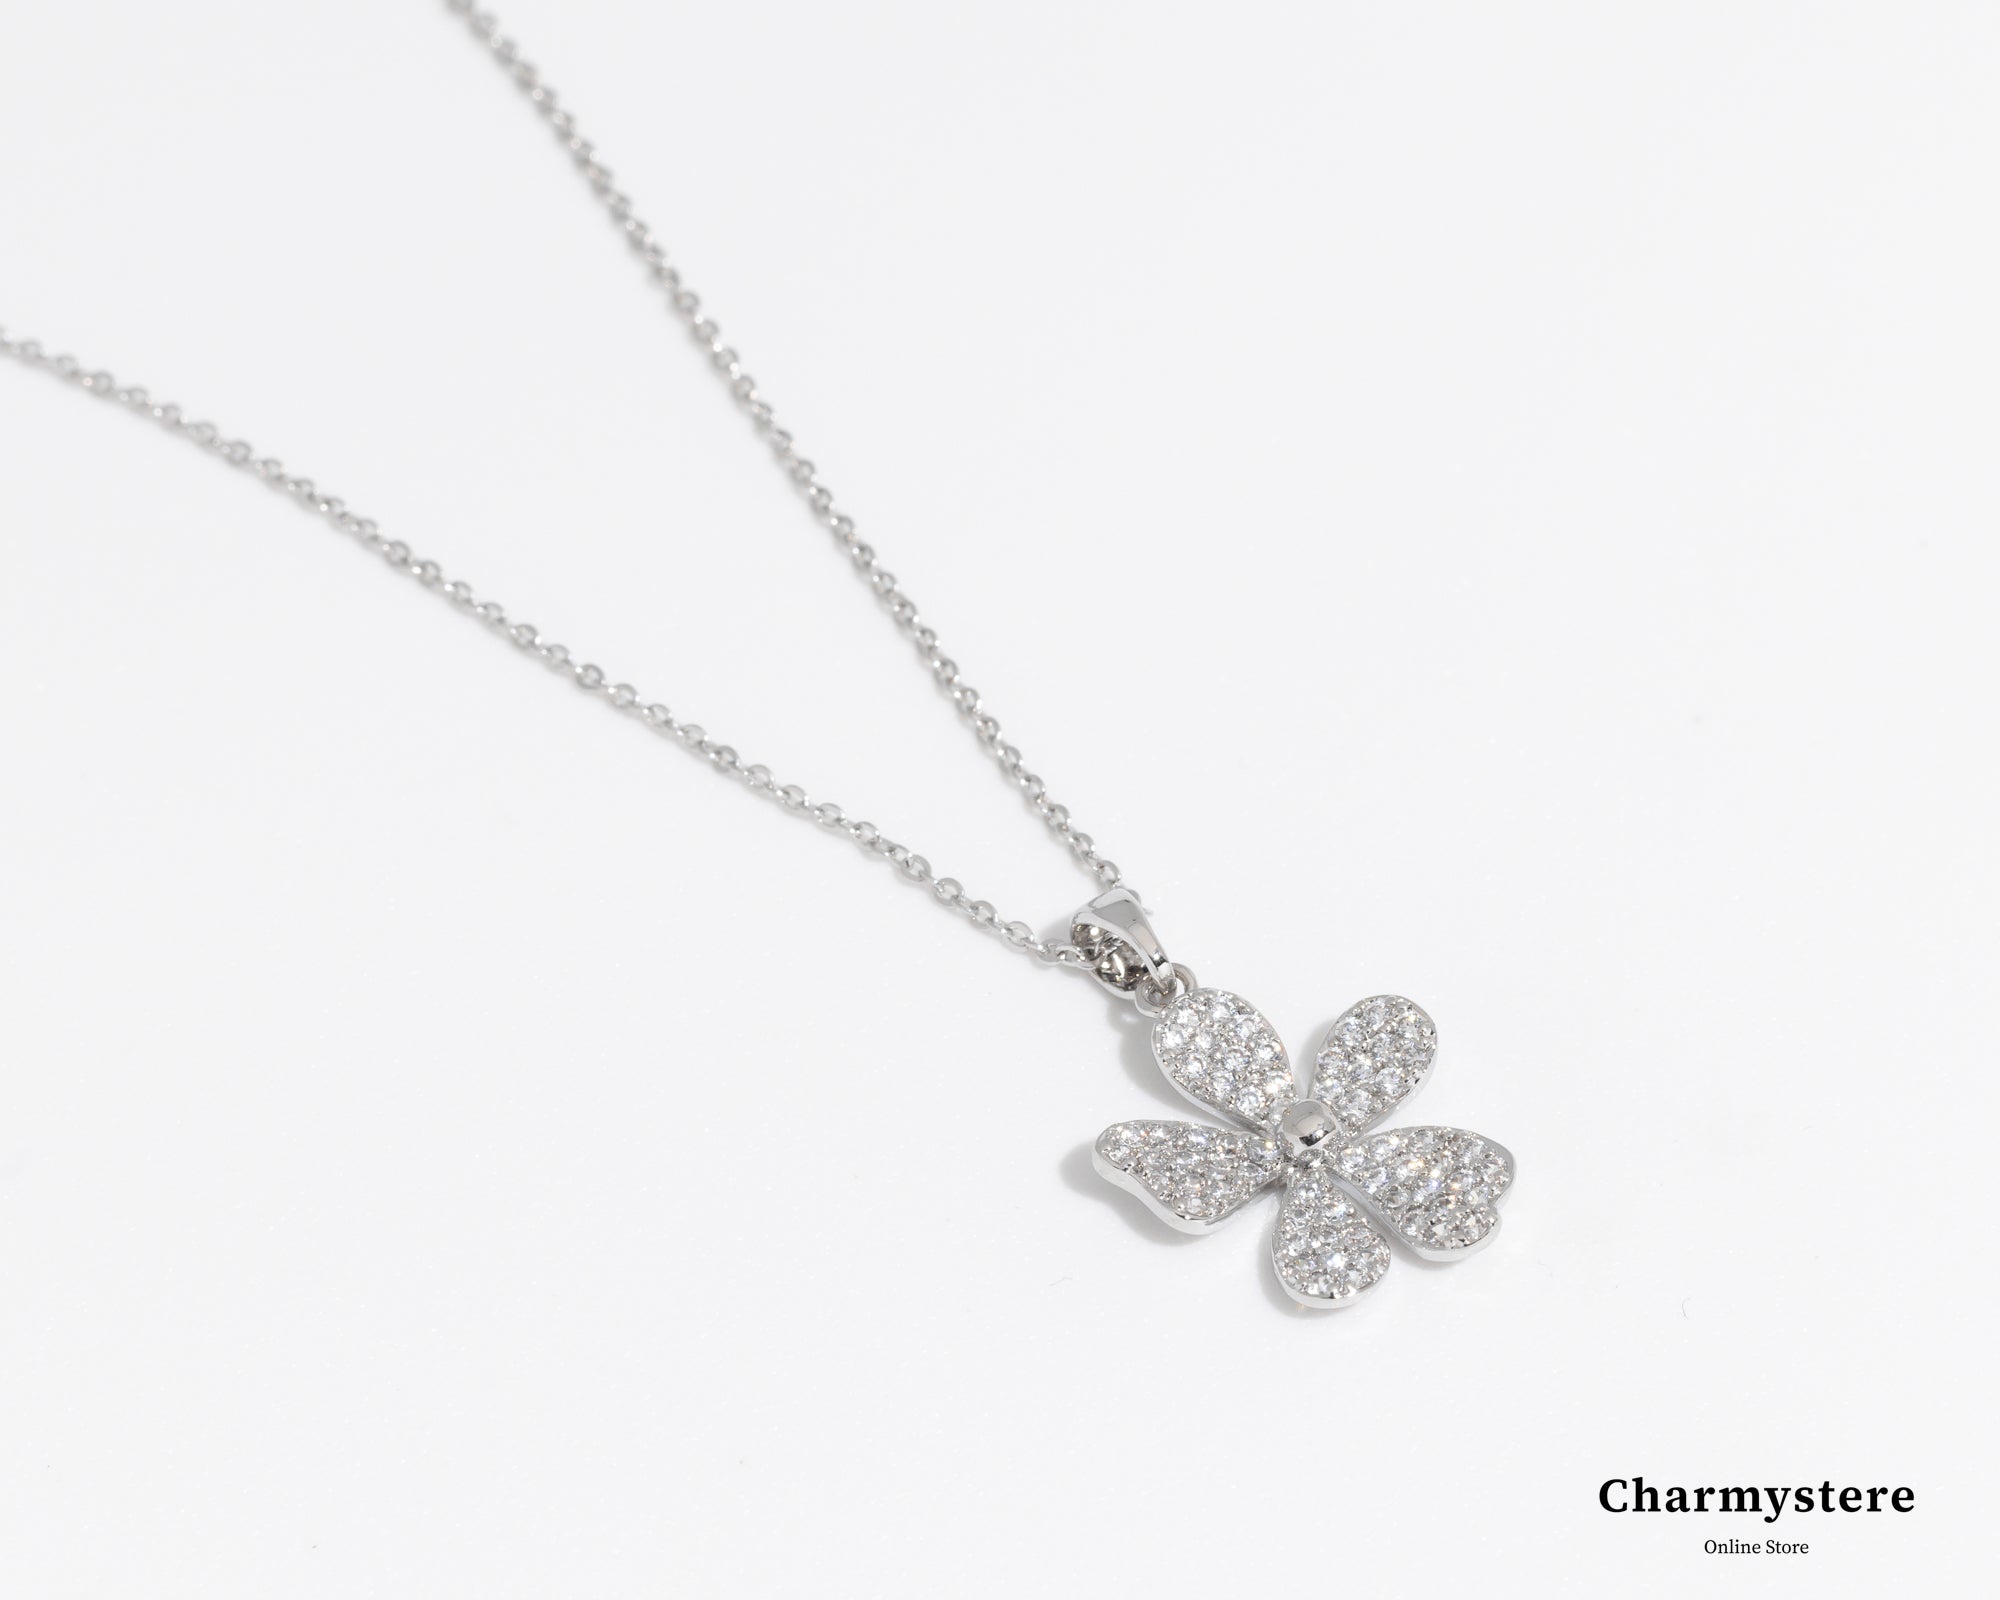 flower pendant necklace